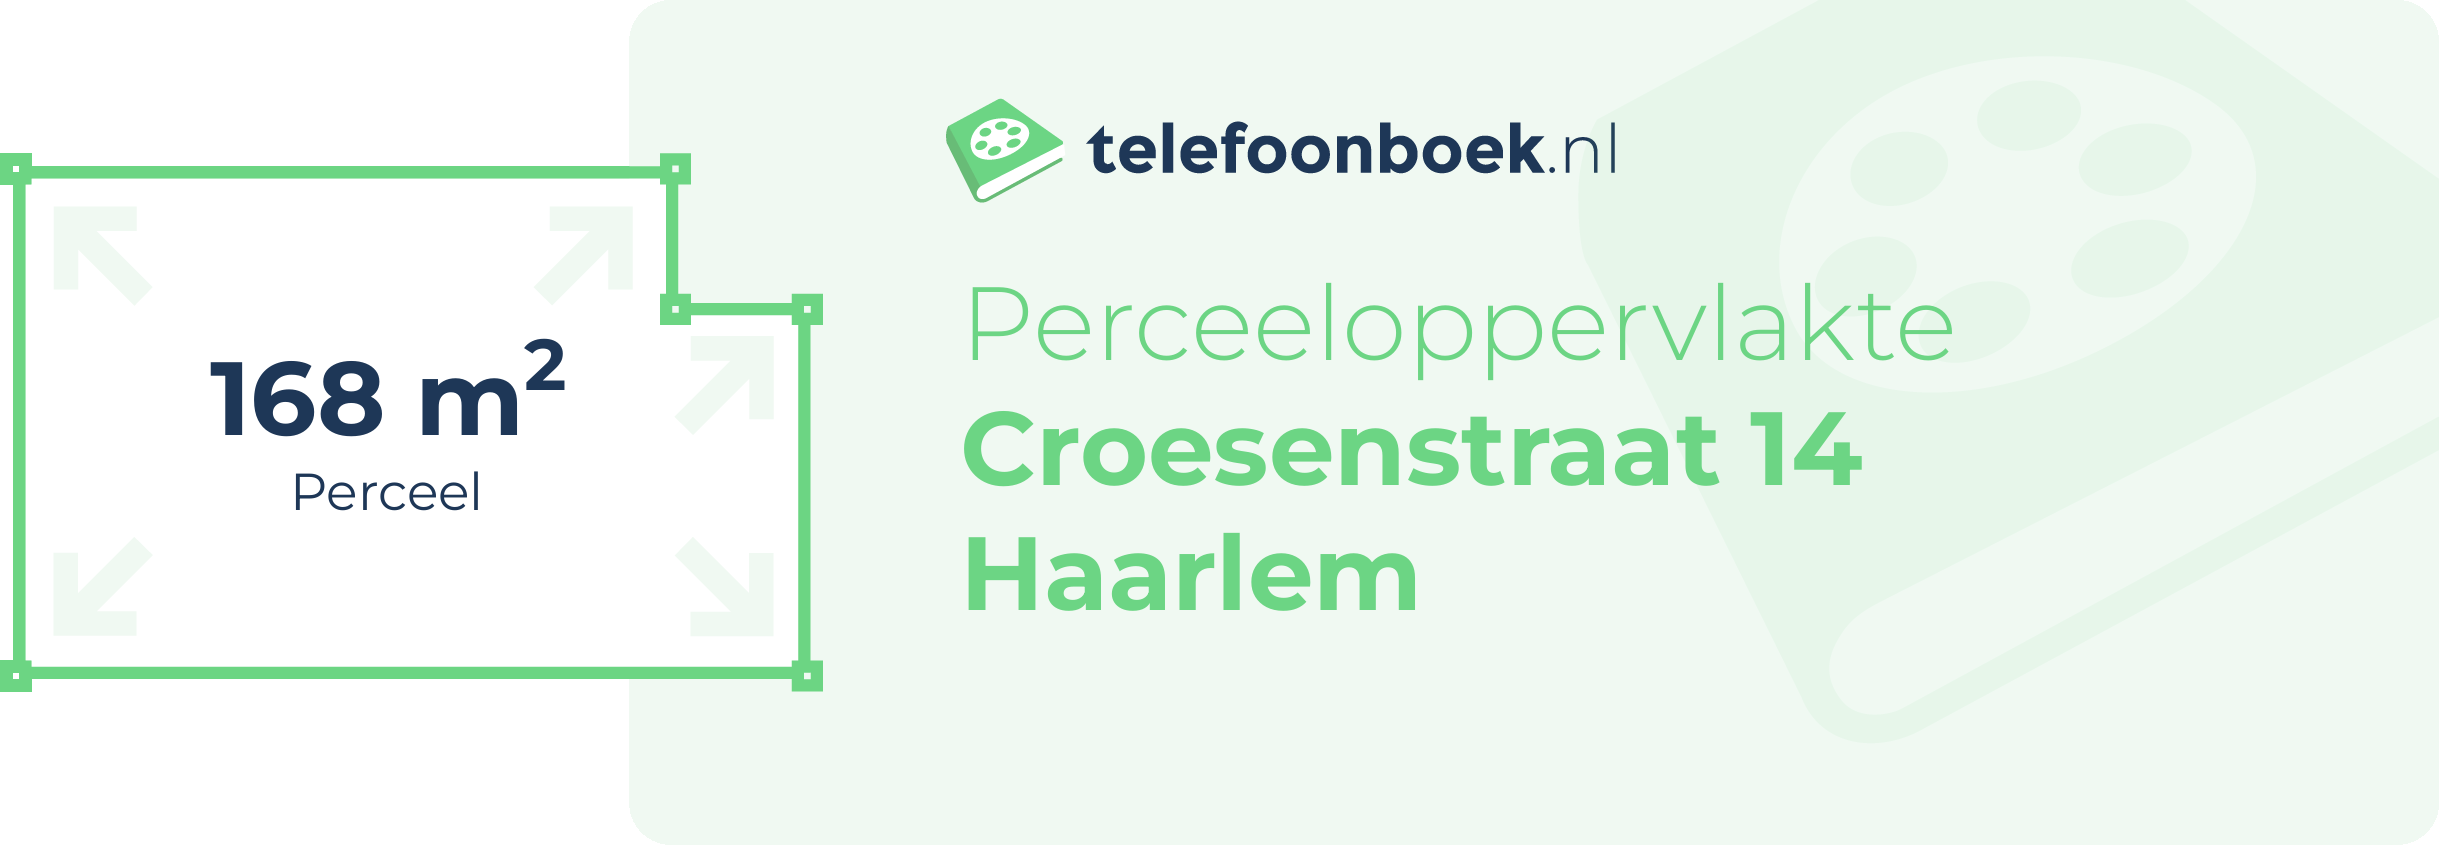 Perceeloppervlakte Croesenstraat 14 Haarlem